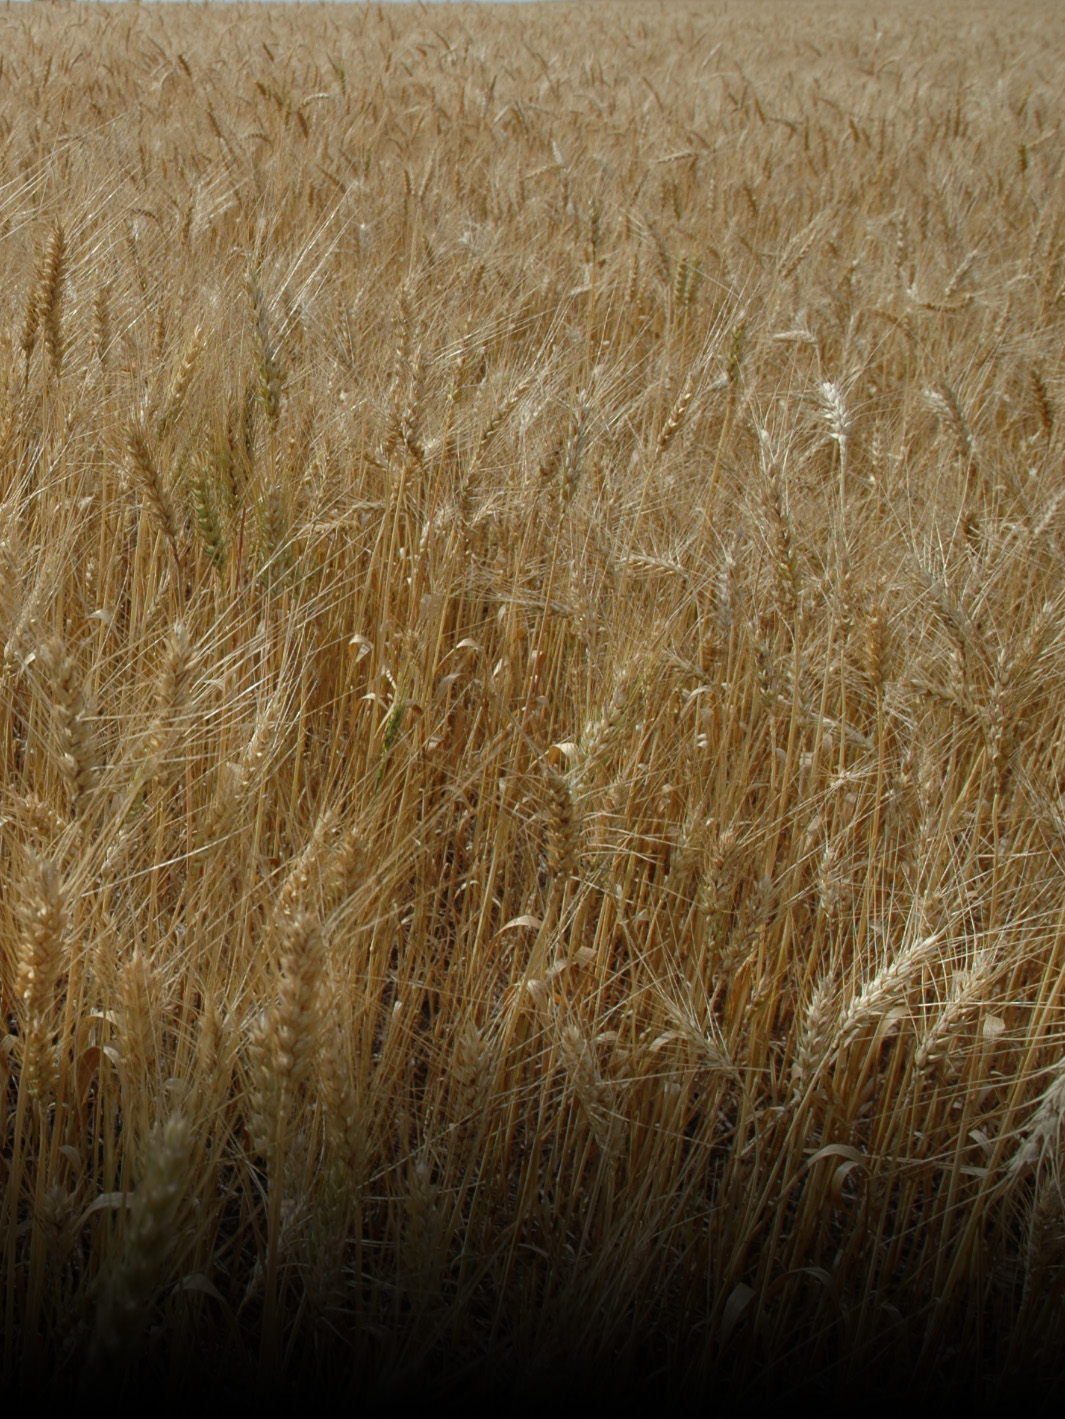 Boletim agropecuário registra queda no preço do trigo catarinense em setembro